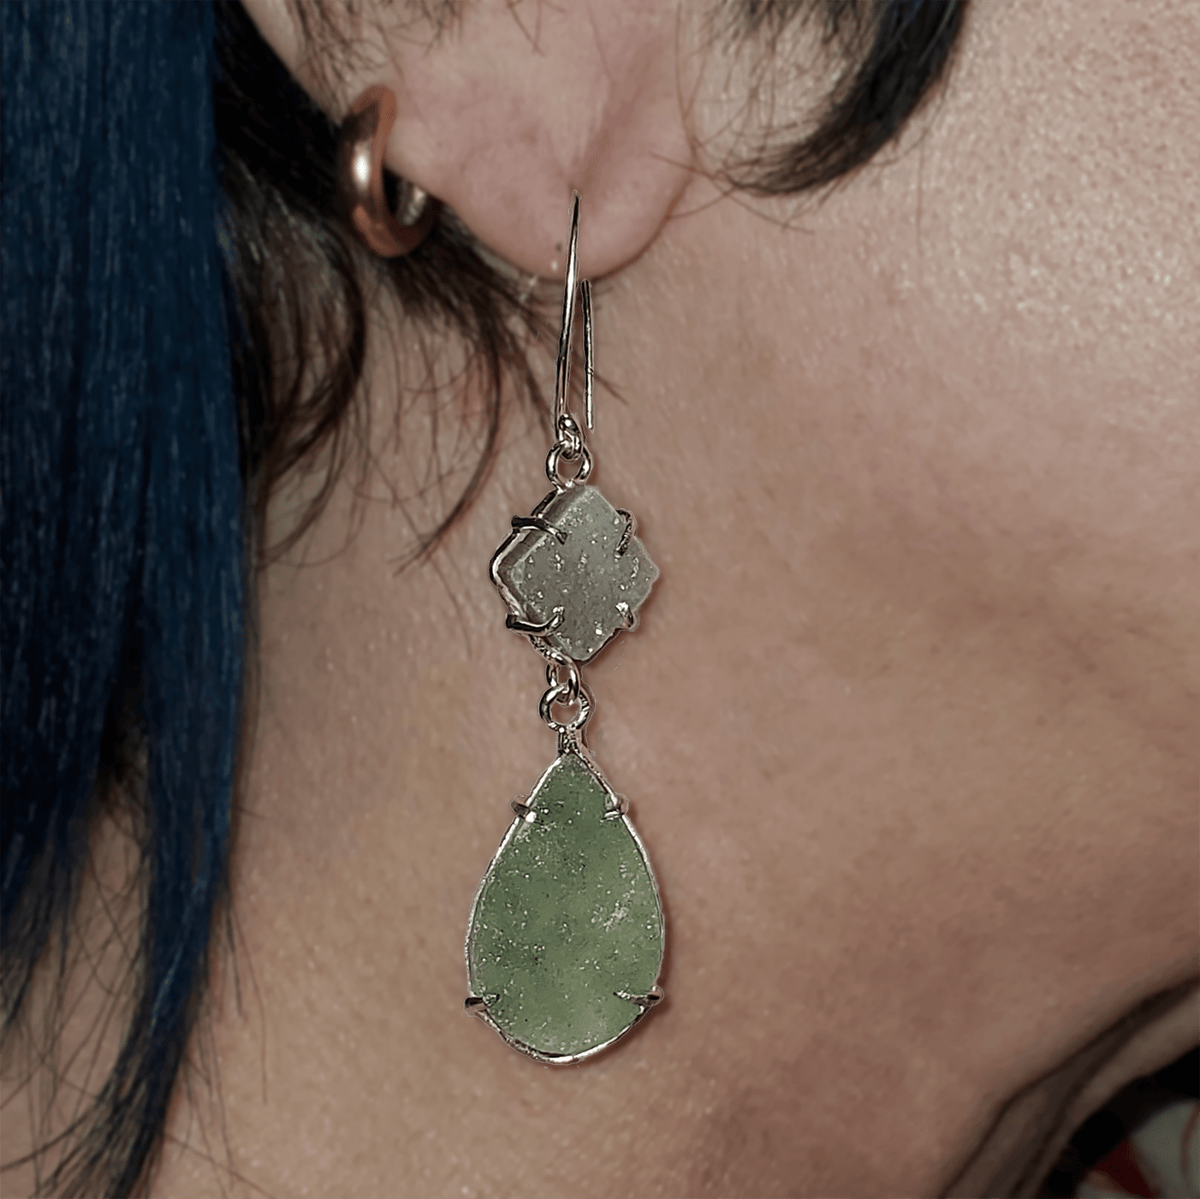 janet lasher Jewelry Earring Dress-Up Two-Stone Amethyst Druzy Drop Earrings